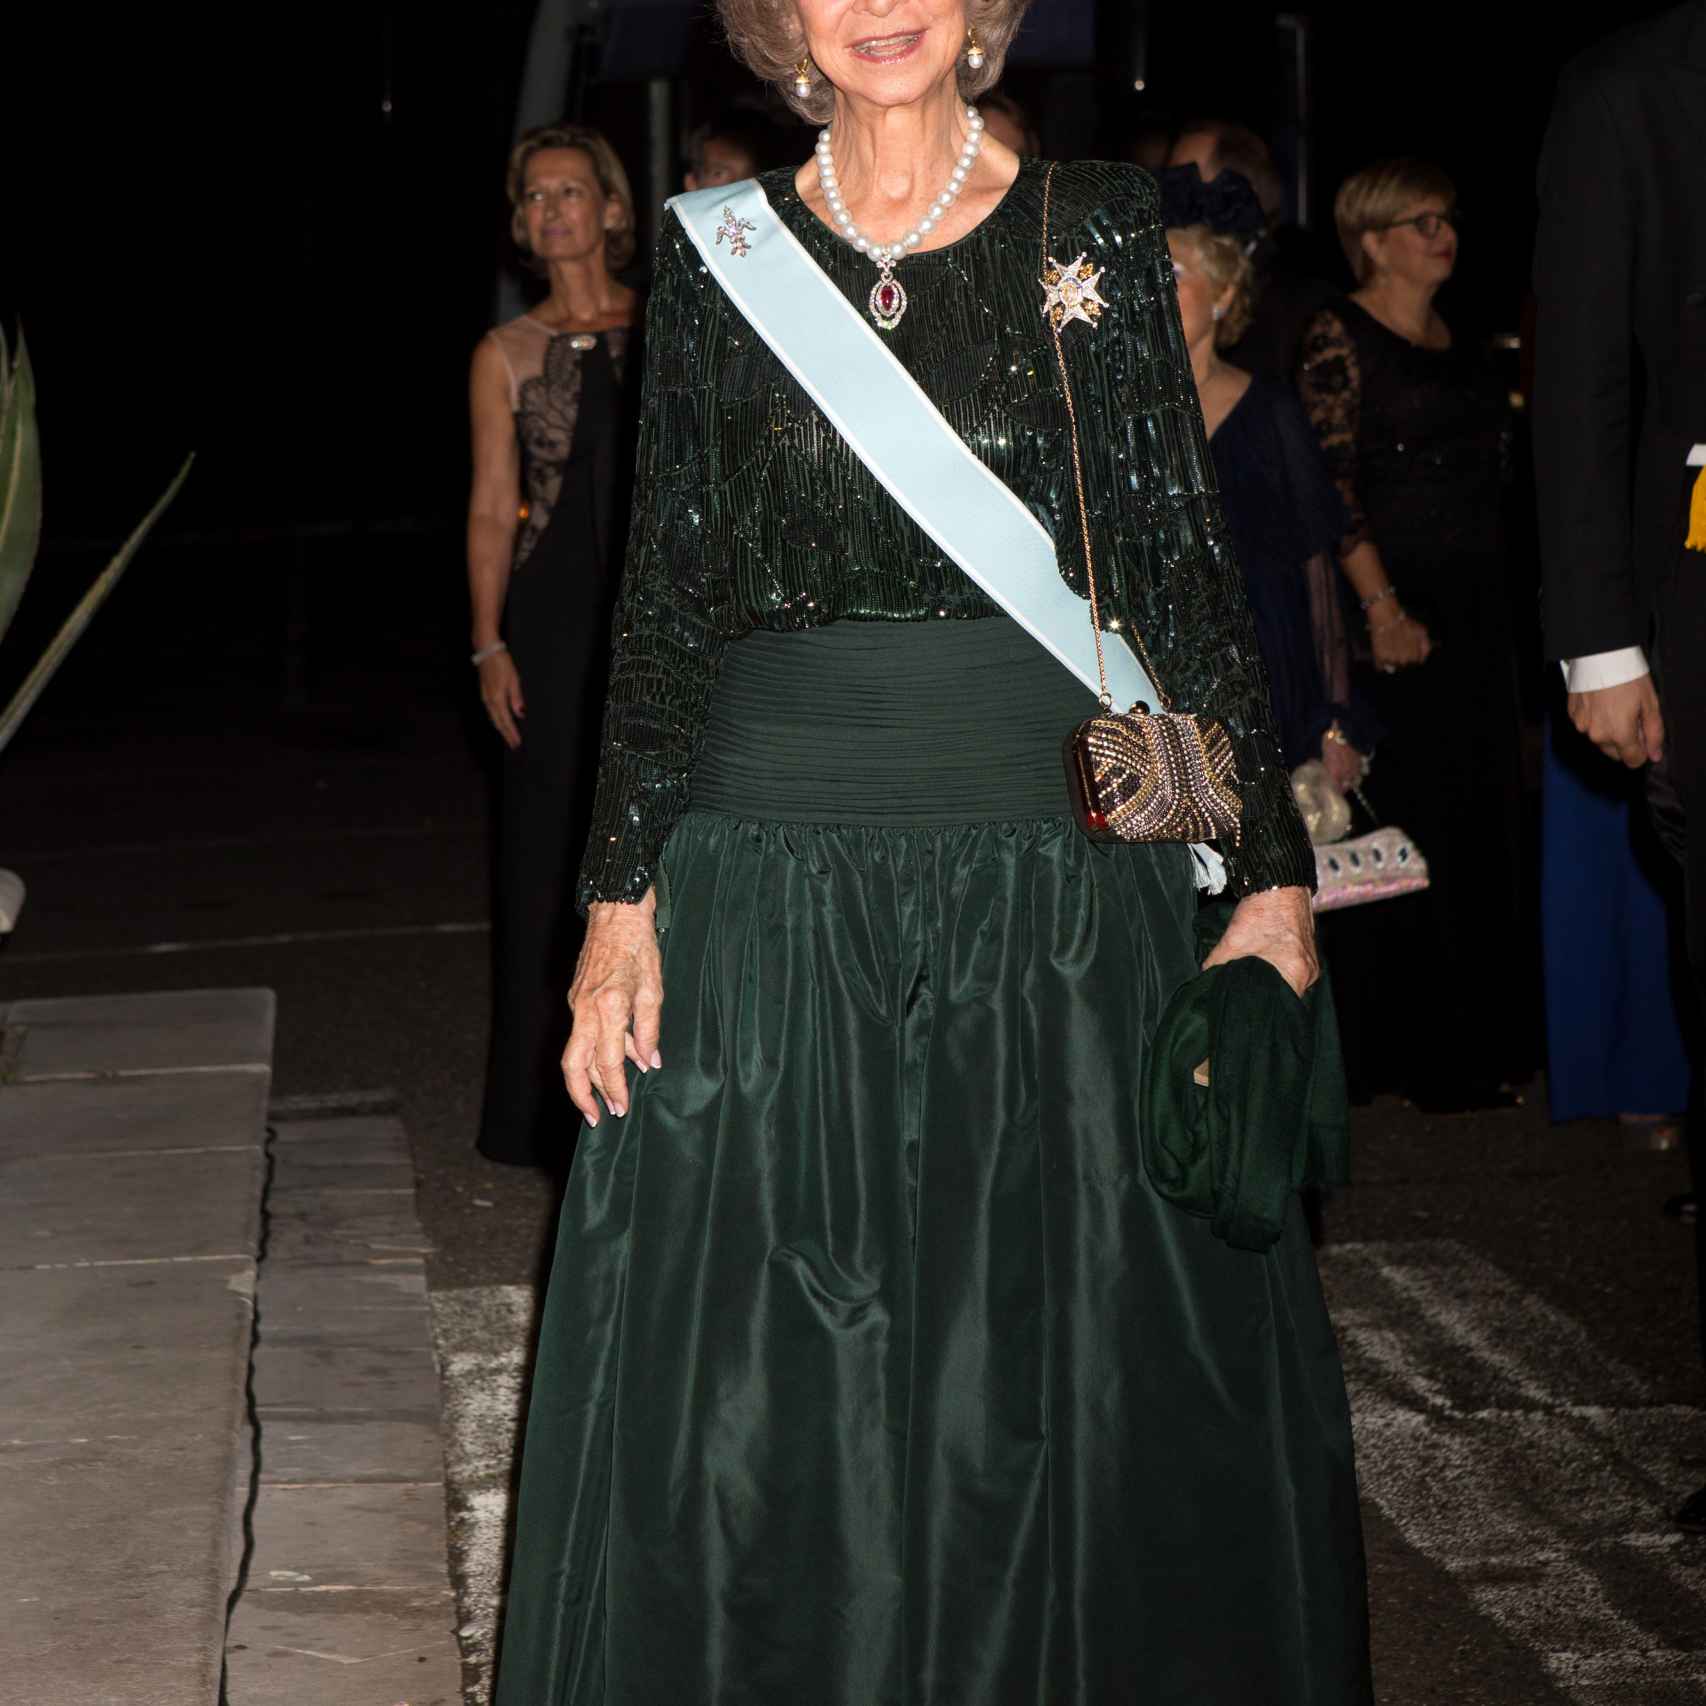 La reina Sofía deslumbró durante la cena de gala con motivo de la boda real.